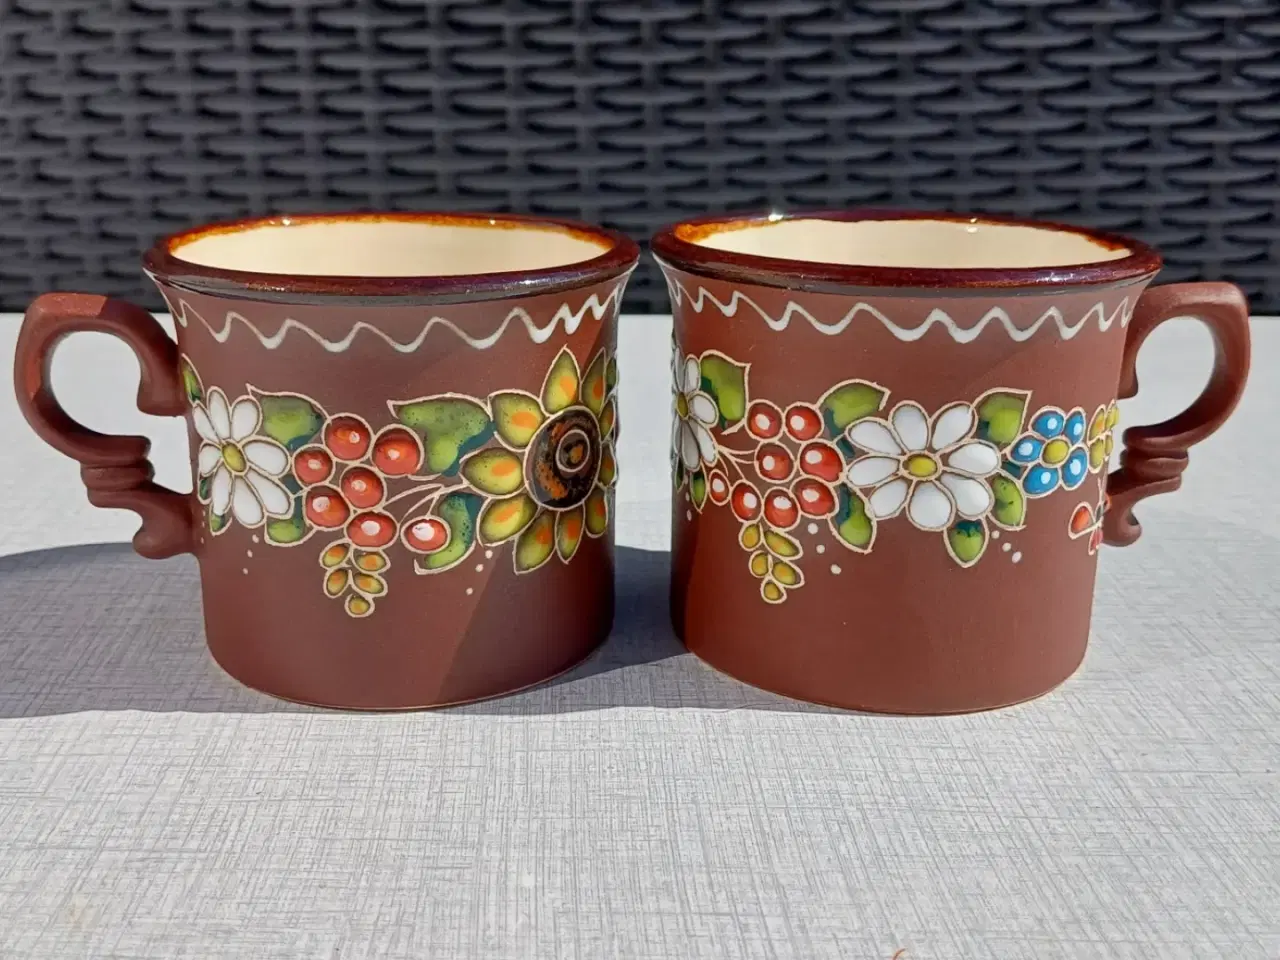 Billede 1 - To håndmalede kopper i keramik. Blomstermotiv.